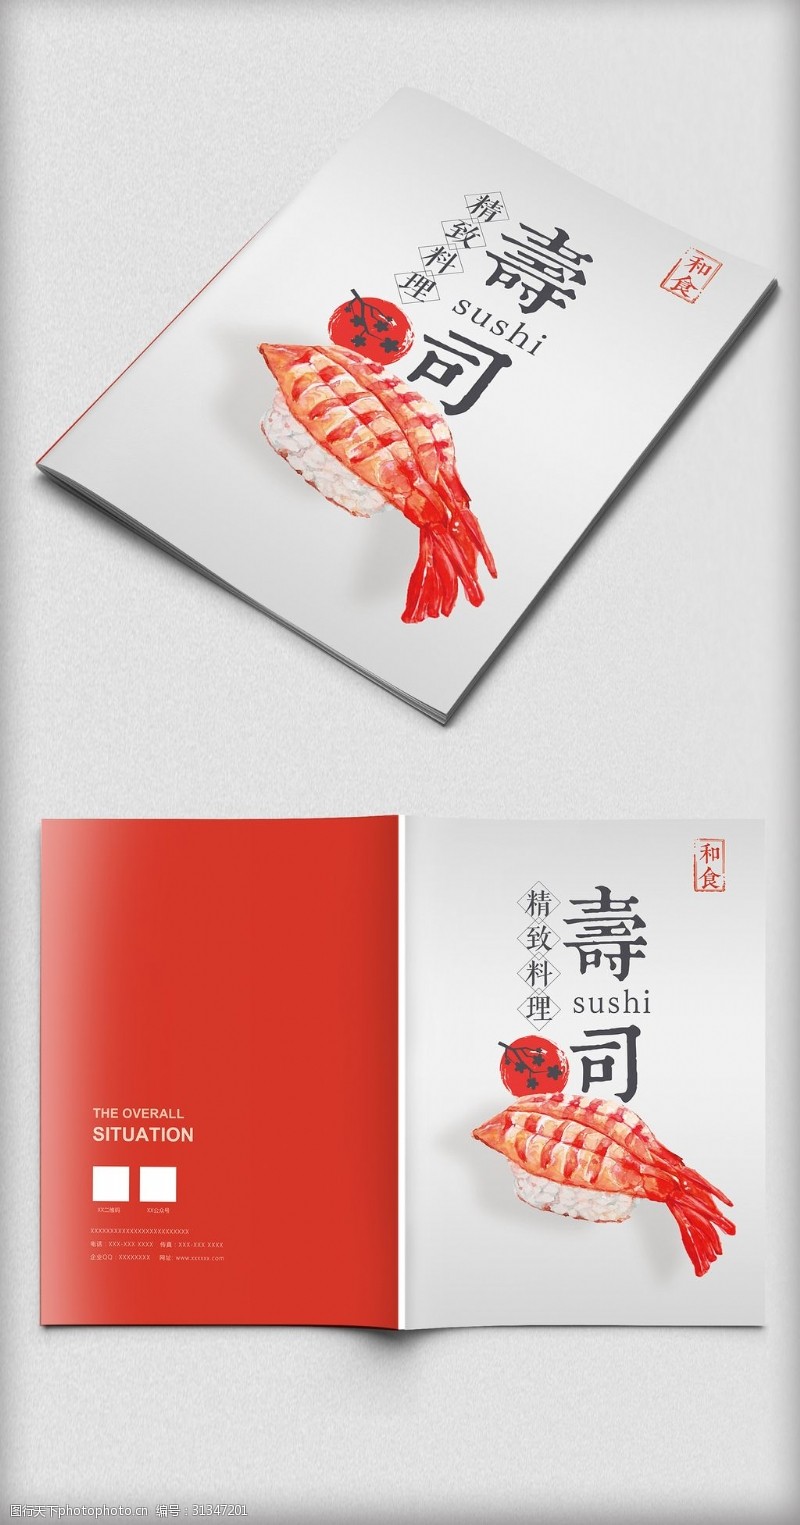 简约封面设计时尚简约日式寿司美食画册封面